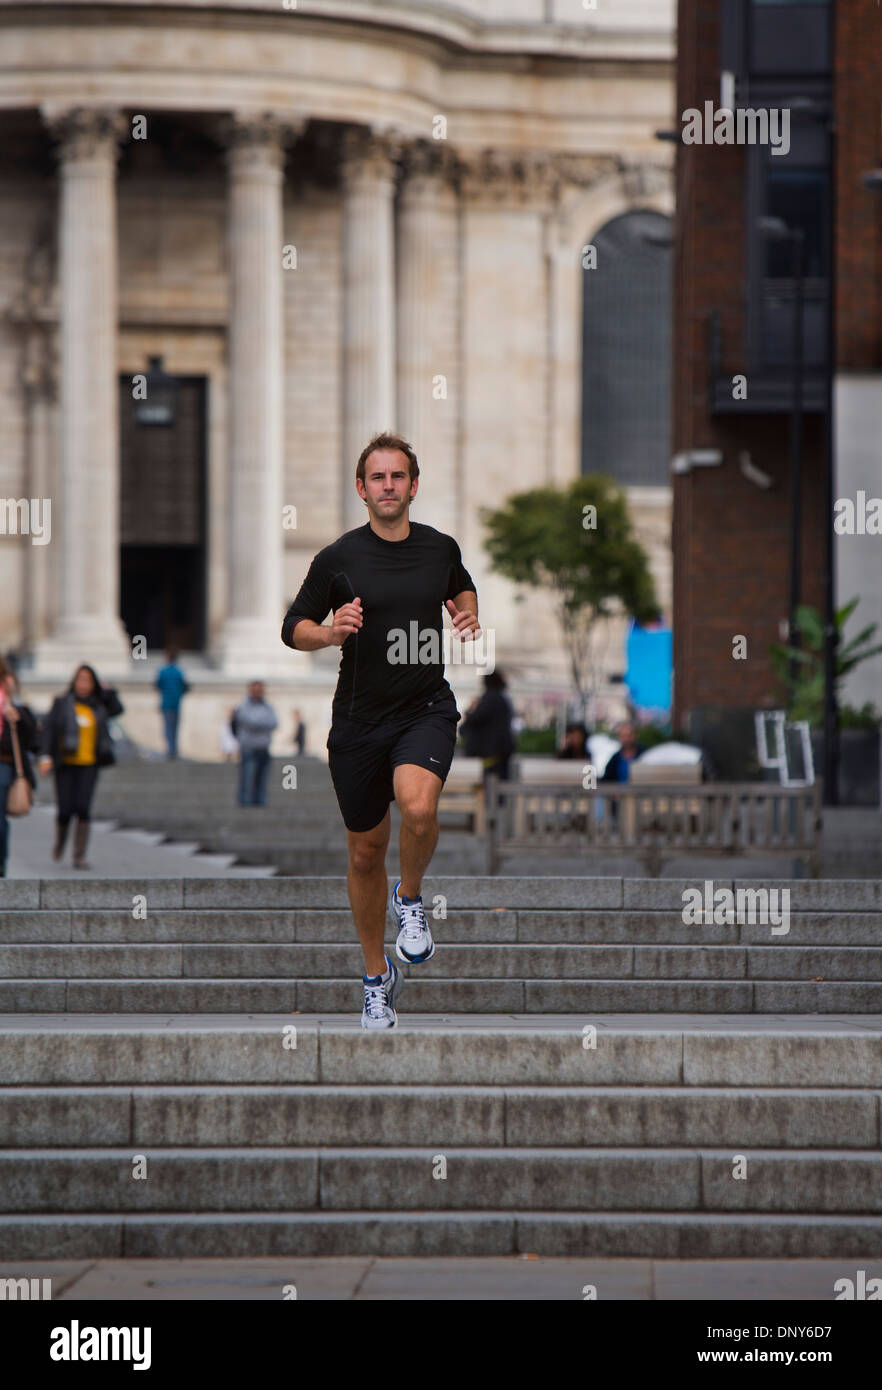 Gary randonnées, entraîneur personnel à Londres, Royaume-Uni, garder l'ajustement par le jogging à travers la ville. Banque D'Images